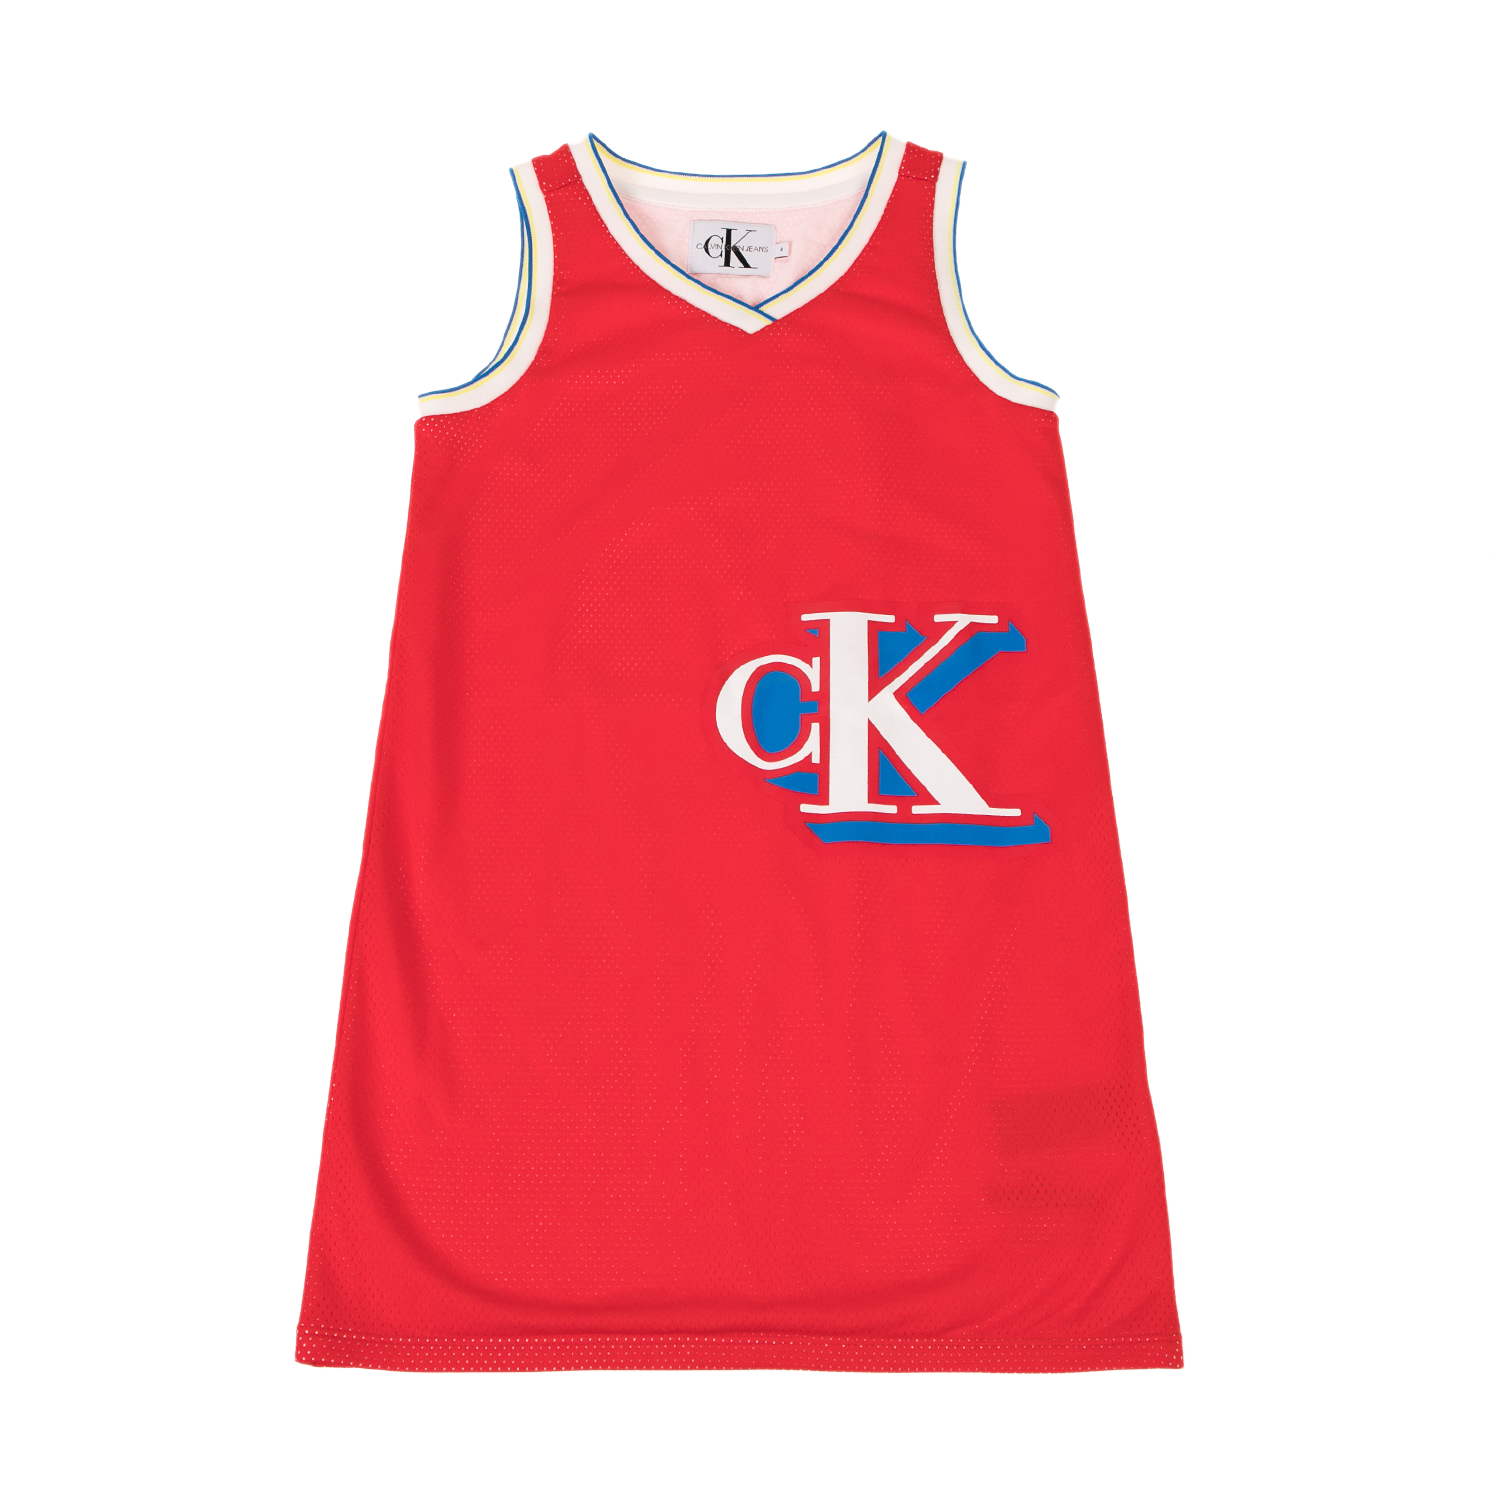 Παιδικά/Girls/Ρούχα/Φορέματα Κοντομάνικα-Αμάνικα CALVIN KLEIN JEANS KIDS - Παιδικό αθλητικό φόρεμα CALVIN KLEIN JEANS KIDS κόκκινο